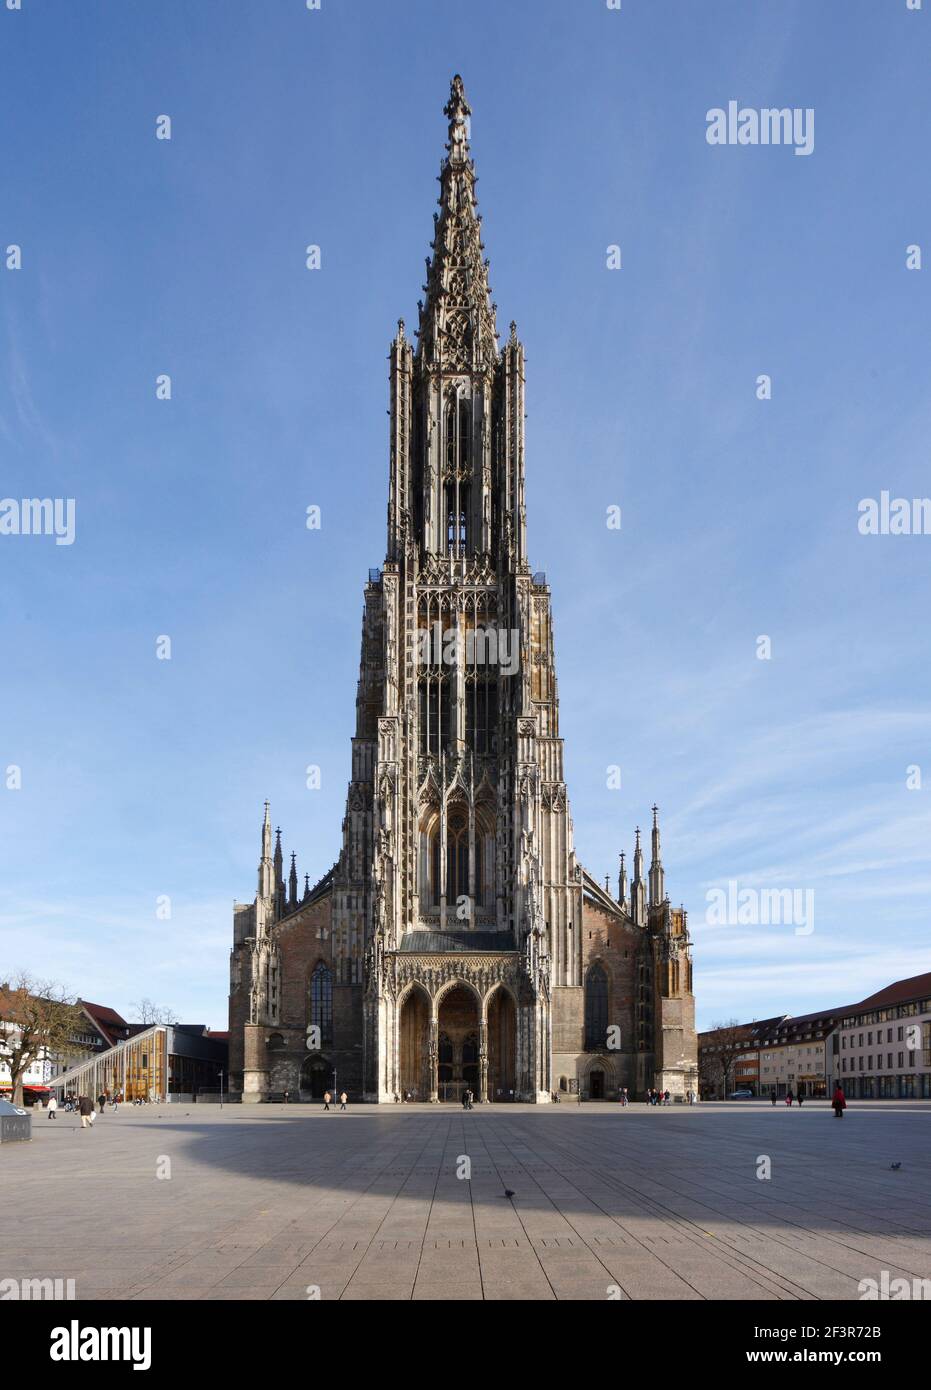 Piazza lastricata di fronte alla cattedrale di Ulm, la chiesa più alta del mondo, è una chiesa luterana situata a Ulm, in Germania Foto Stock